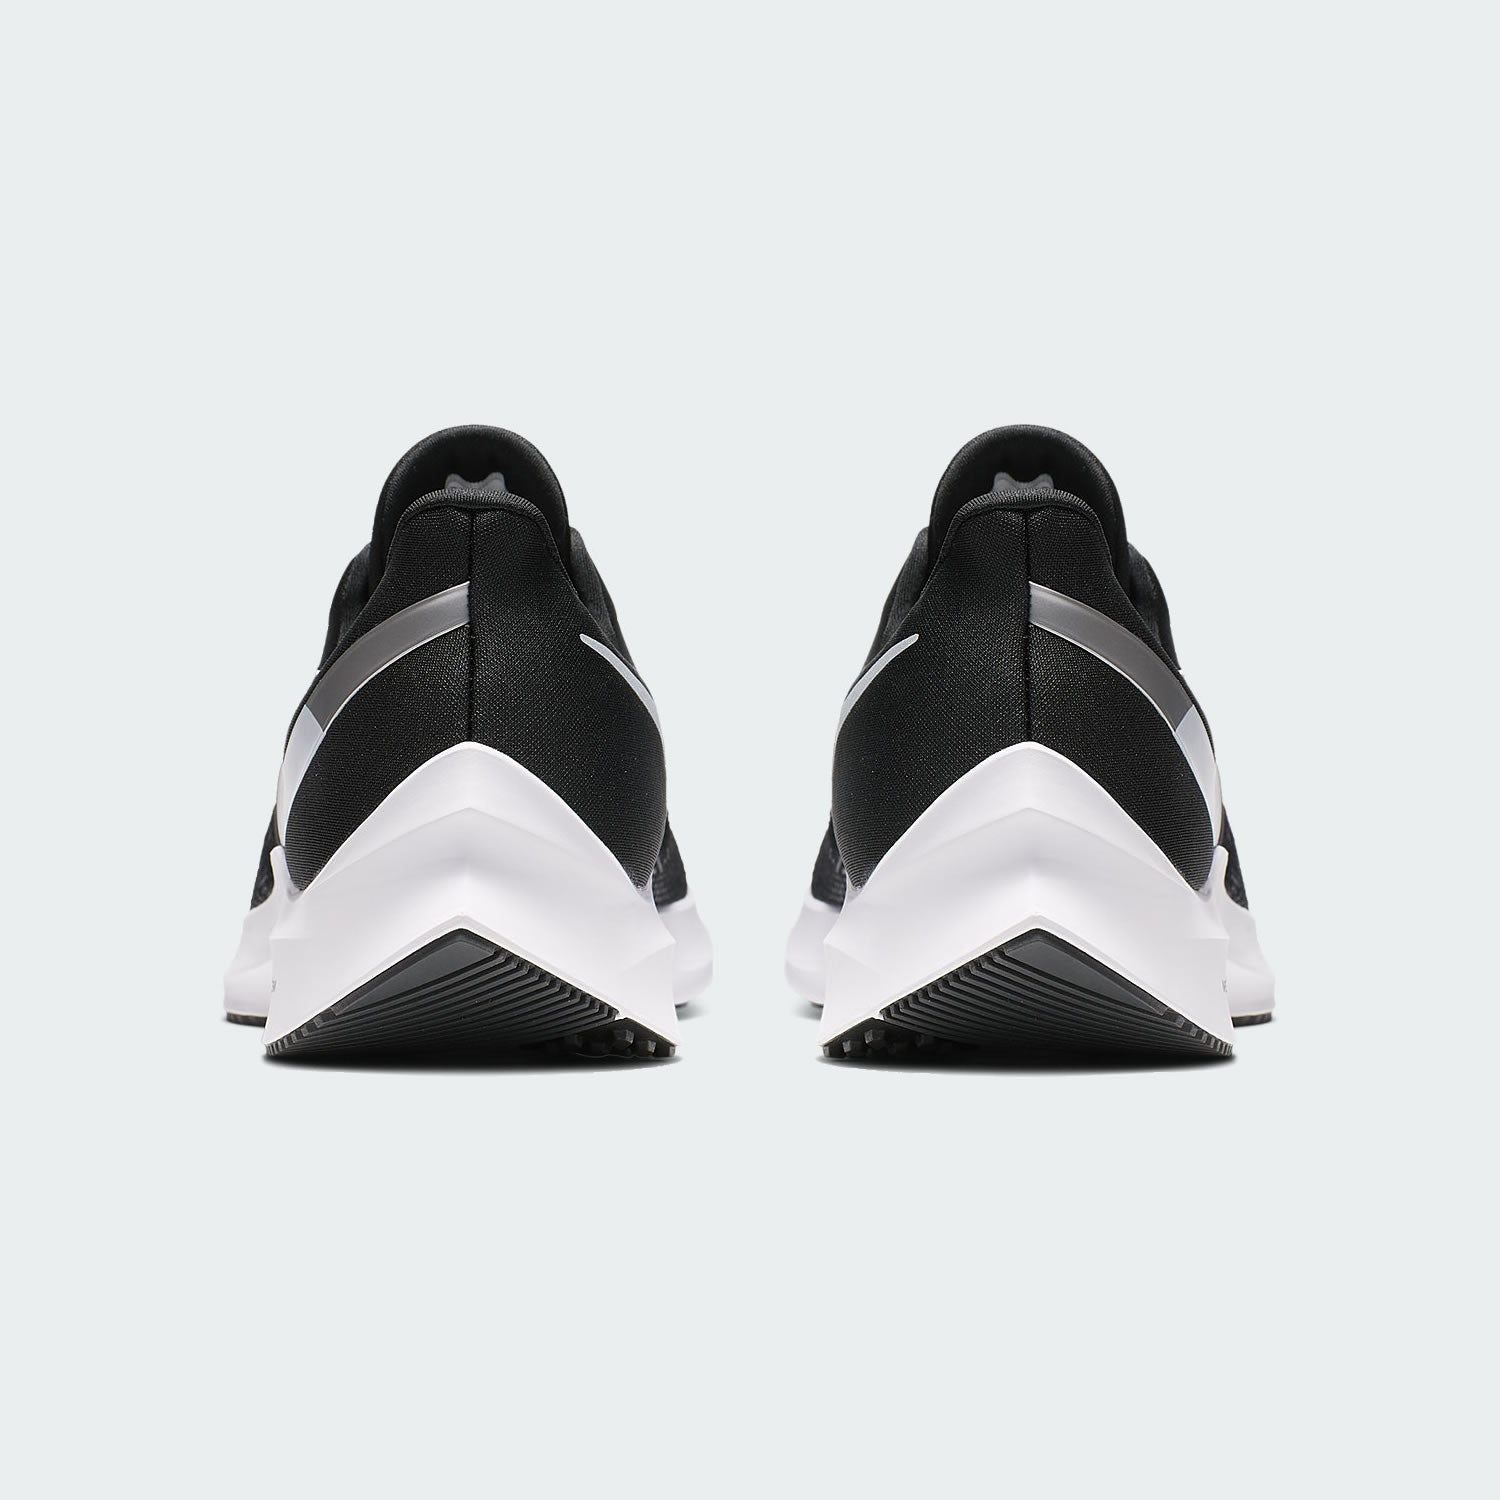 Nike Men's Zoom Winflo 6 Shoes AQ7497 001